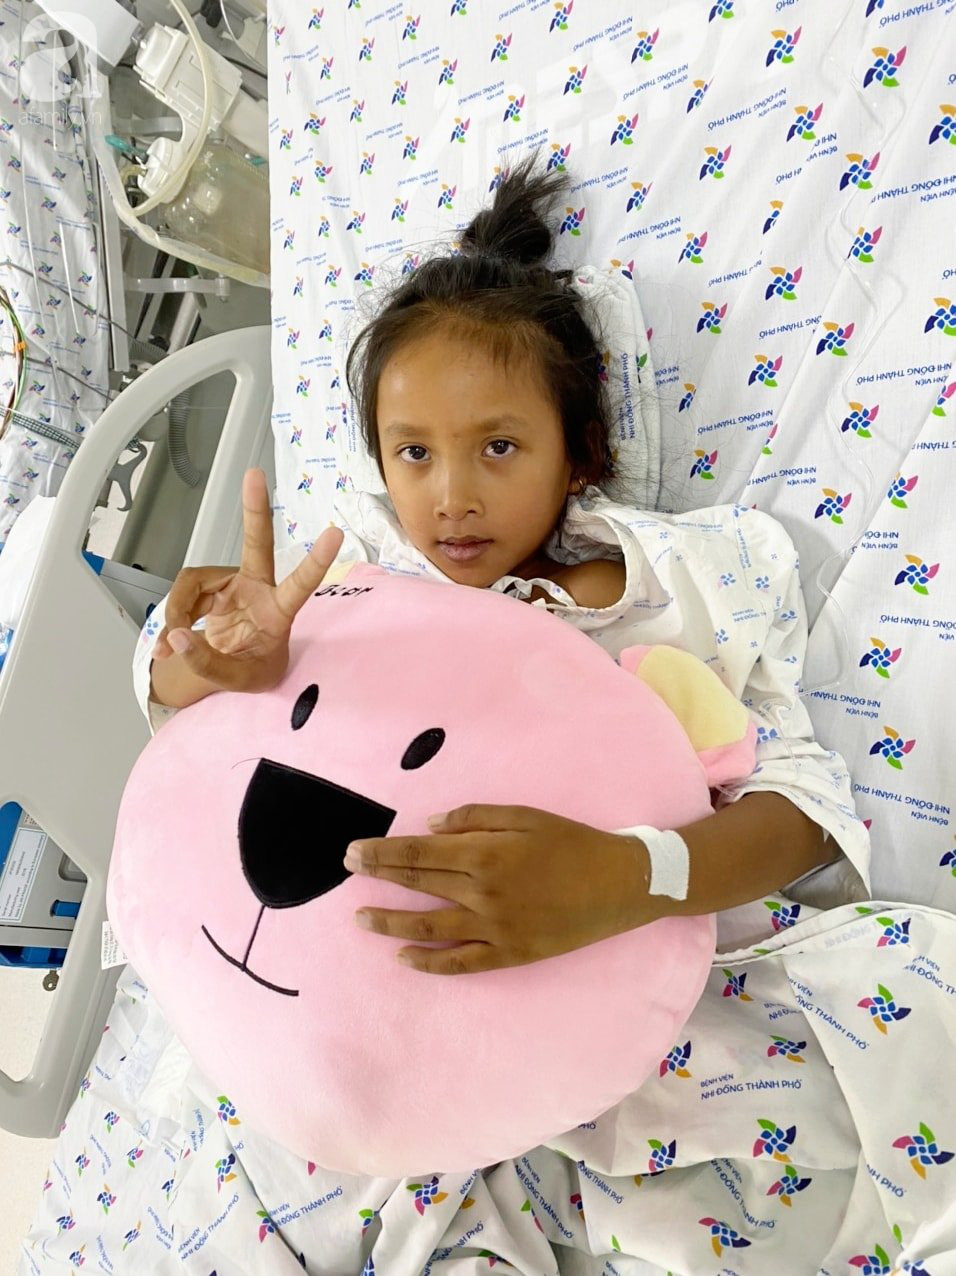 Xuyên Tết cứu bé gái 9 tuổi bị viêm cơ tiêm thập tử nhất sinh - Ảnh 1.